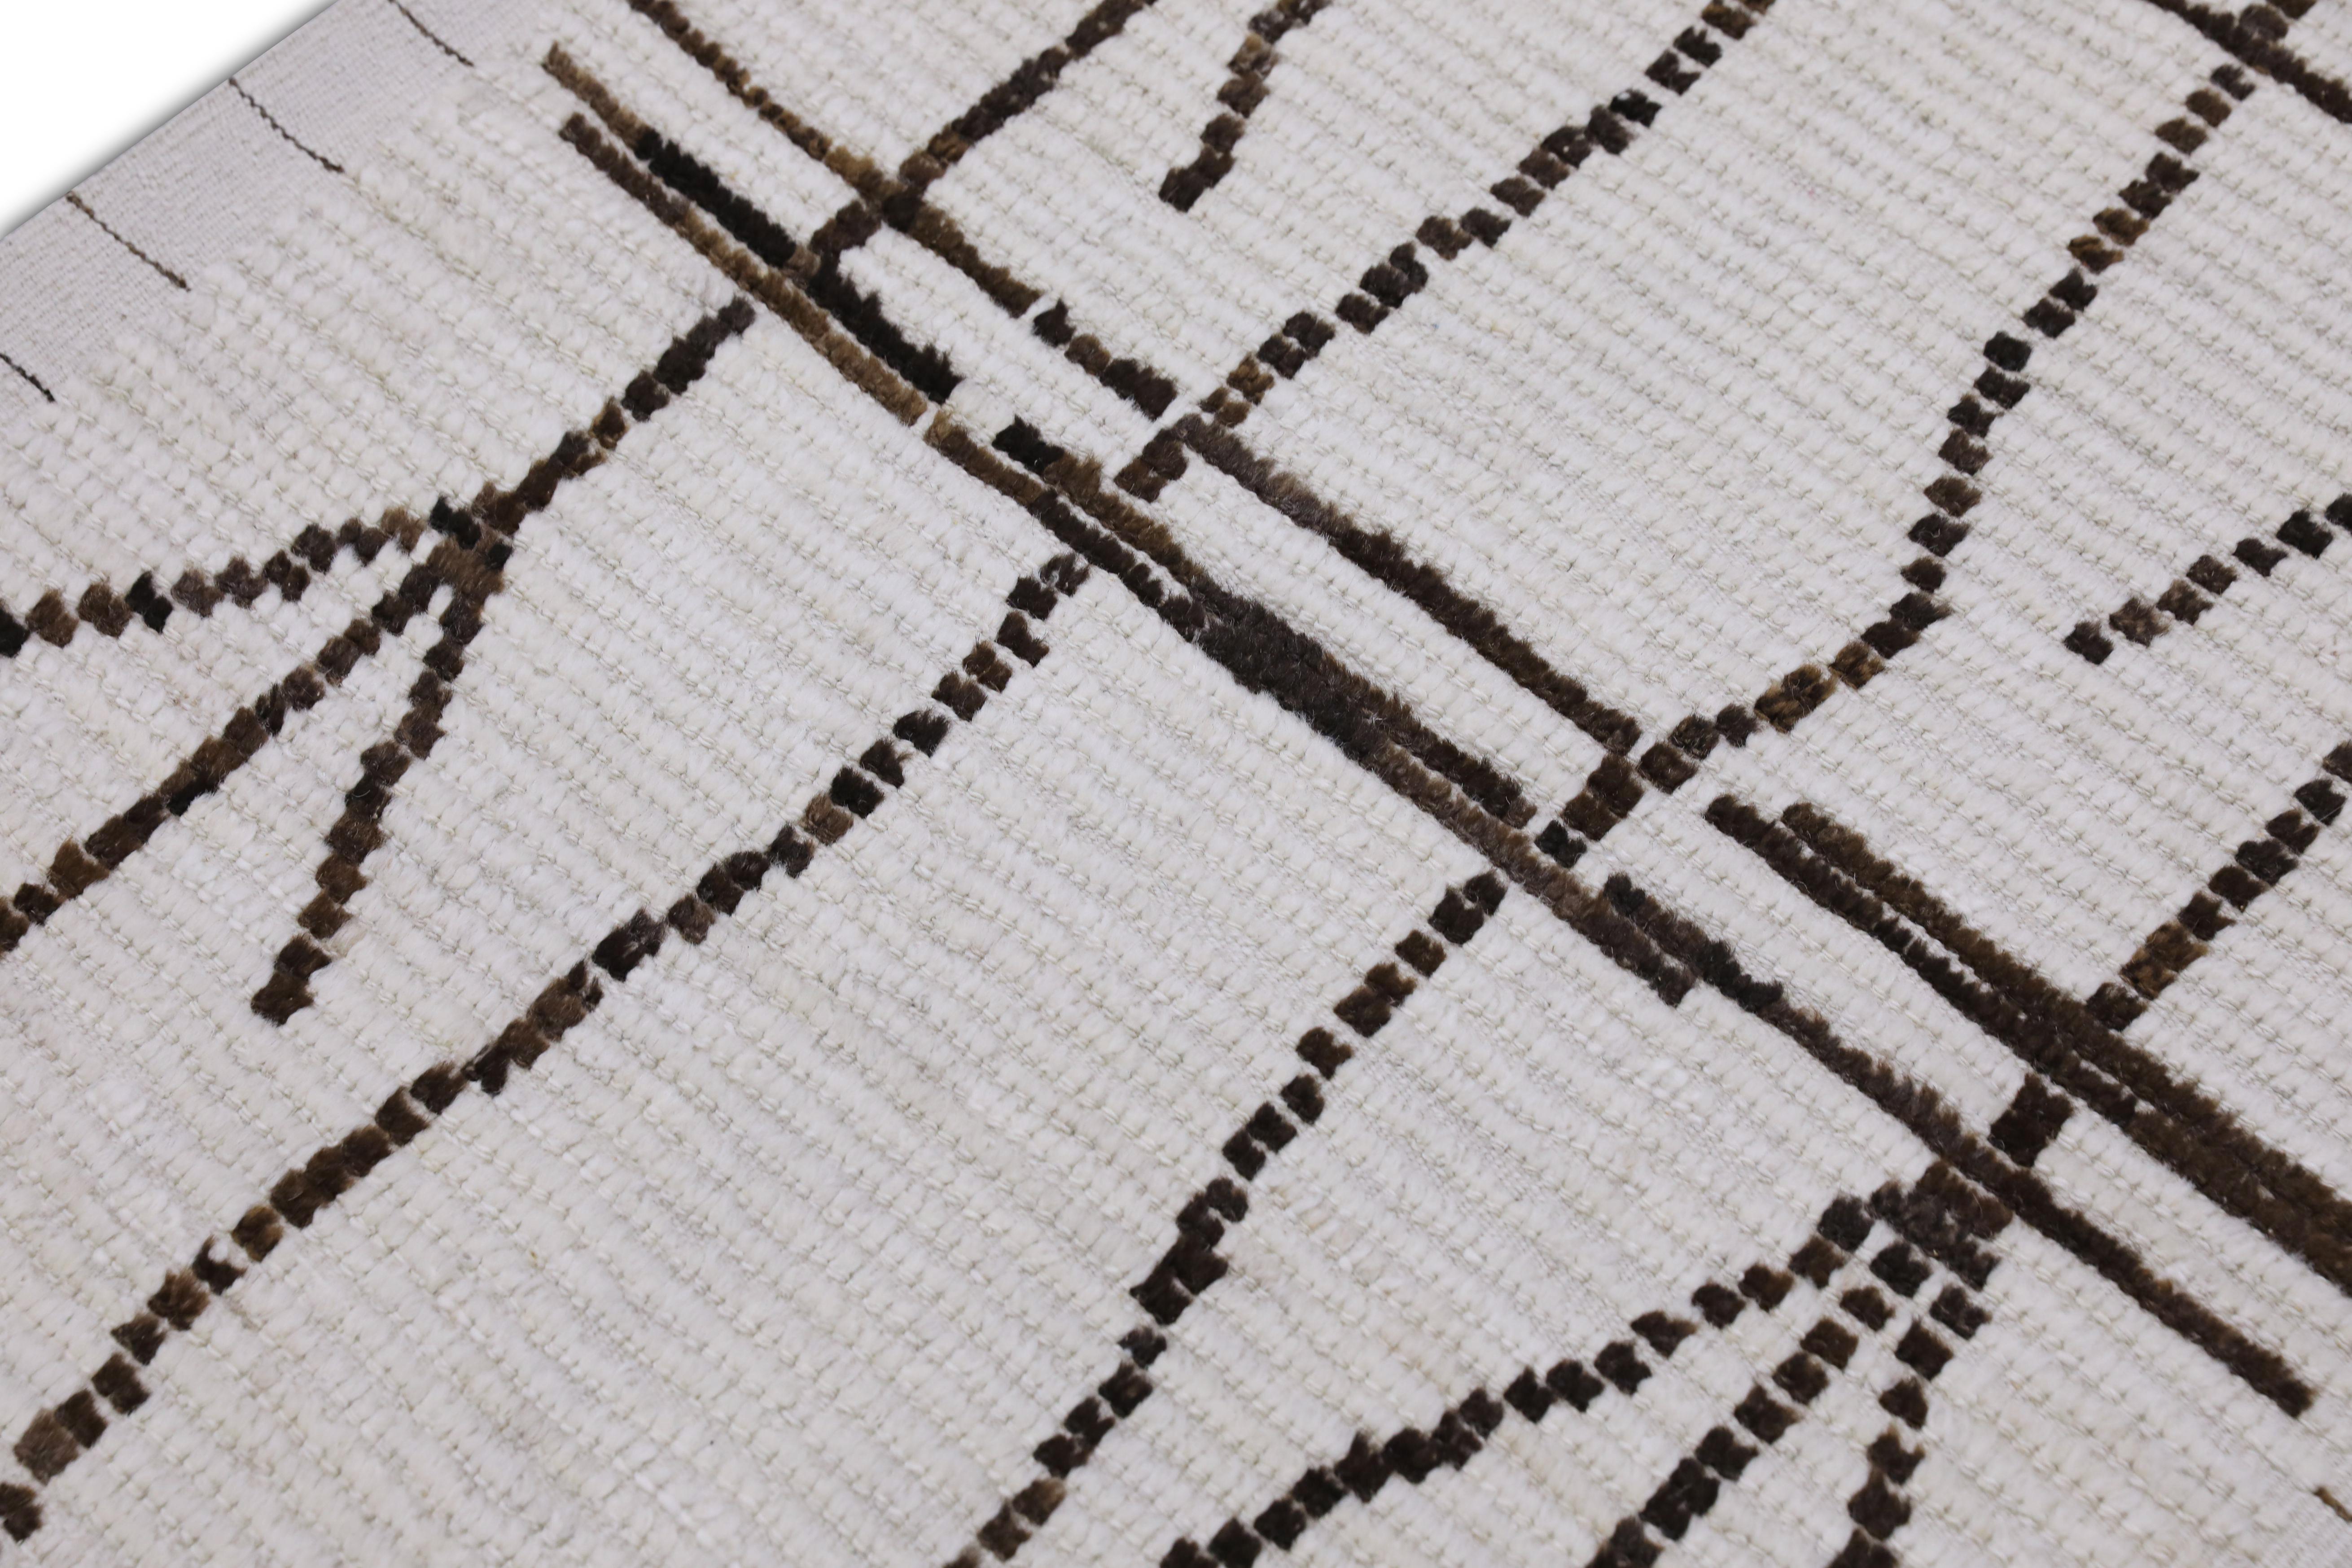  Handmade Wool Tulu Rug in Geometric Design 2'9